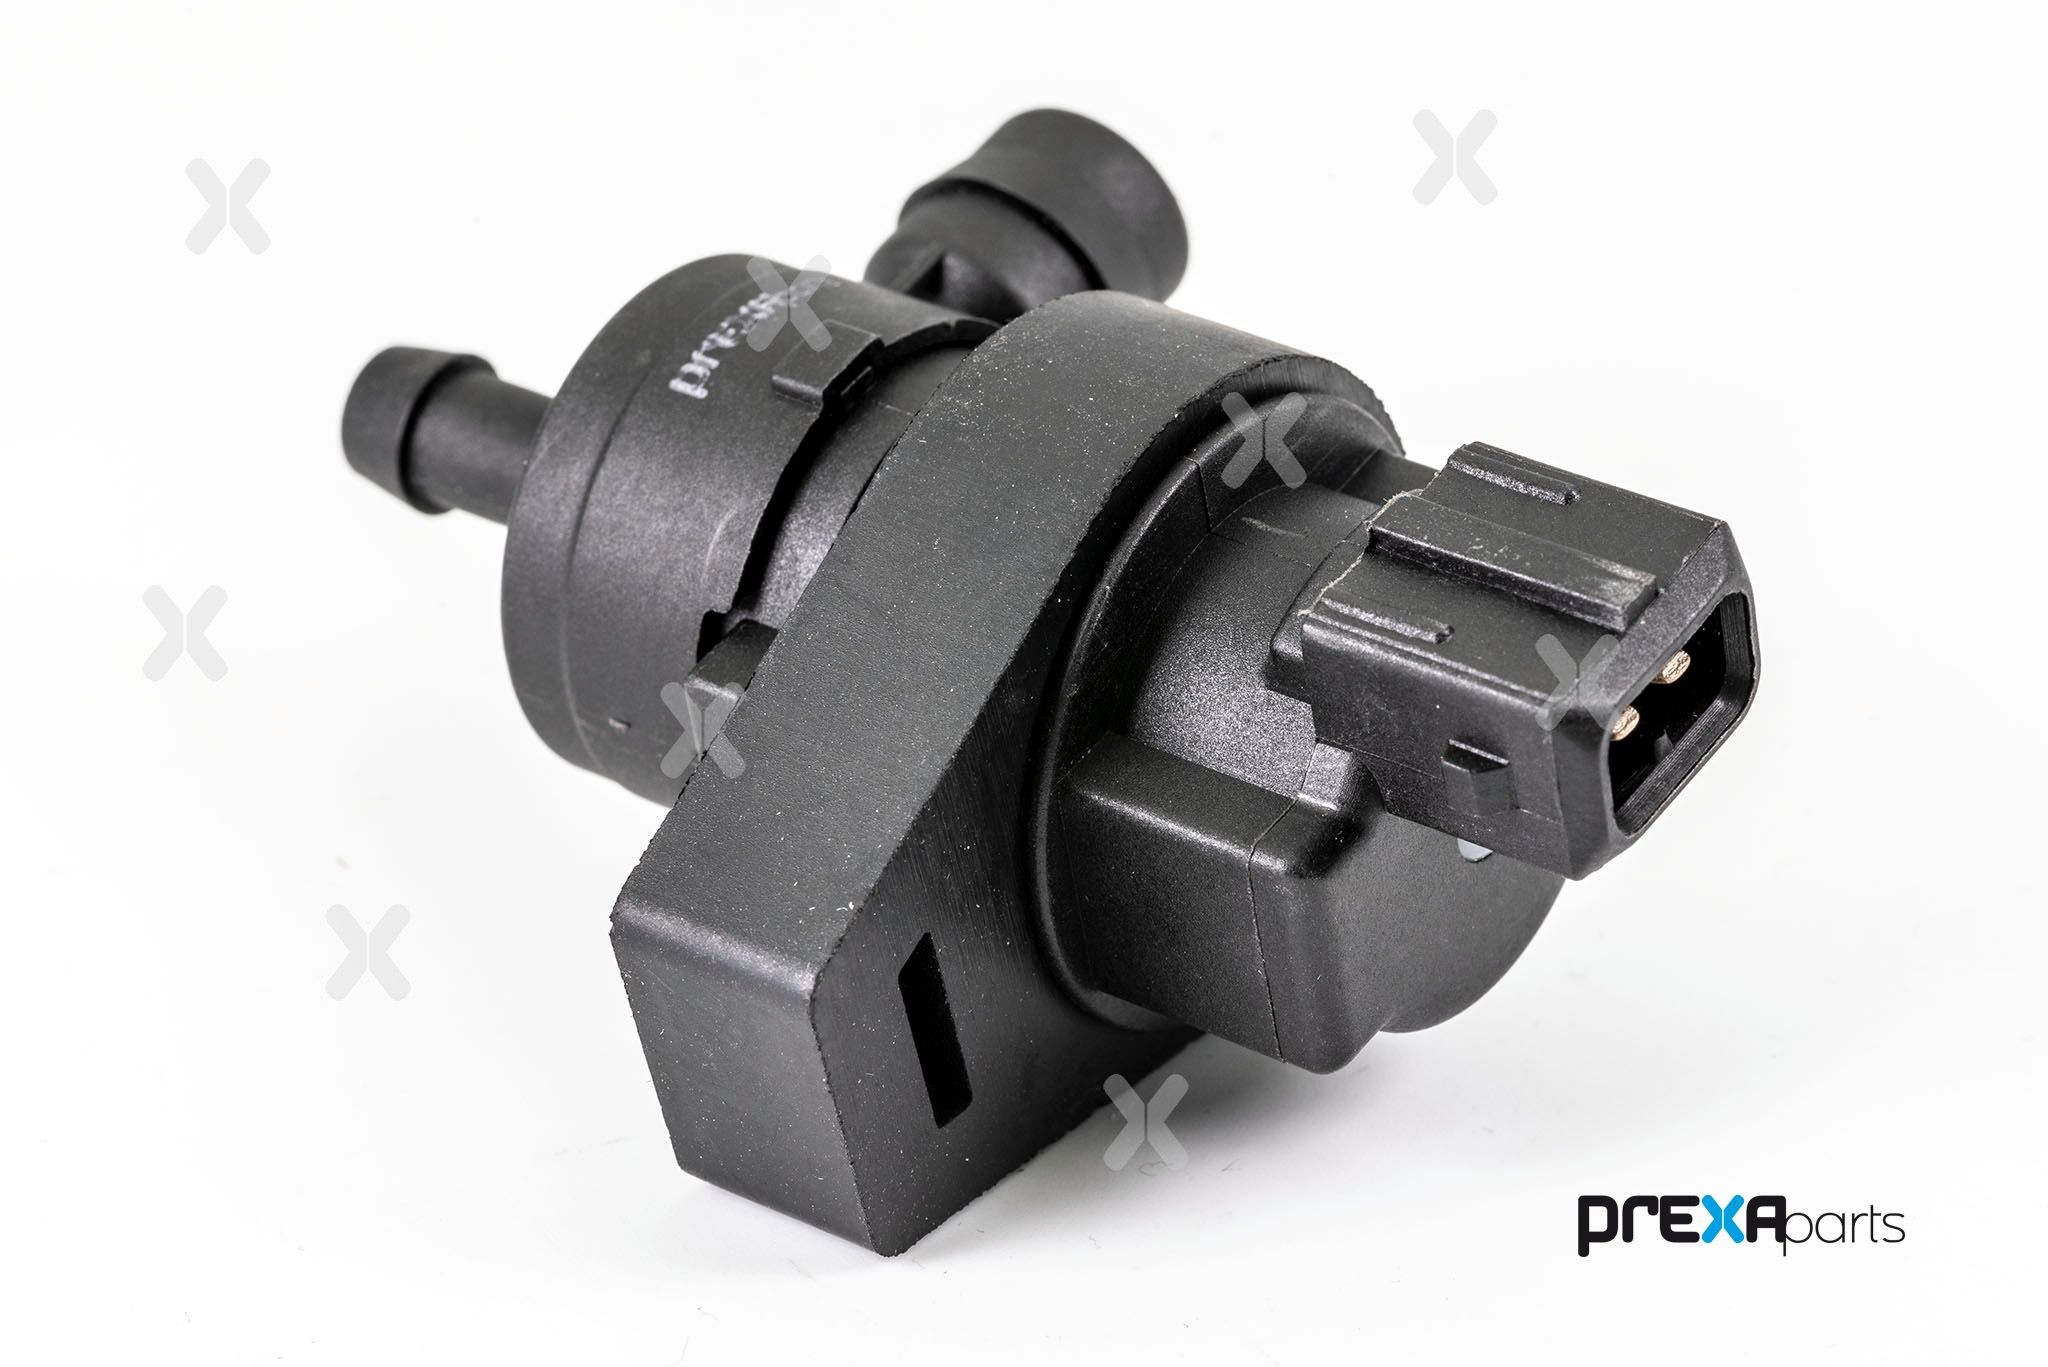 PREXAparts Fuel tank vent valve P229036 buy